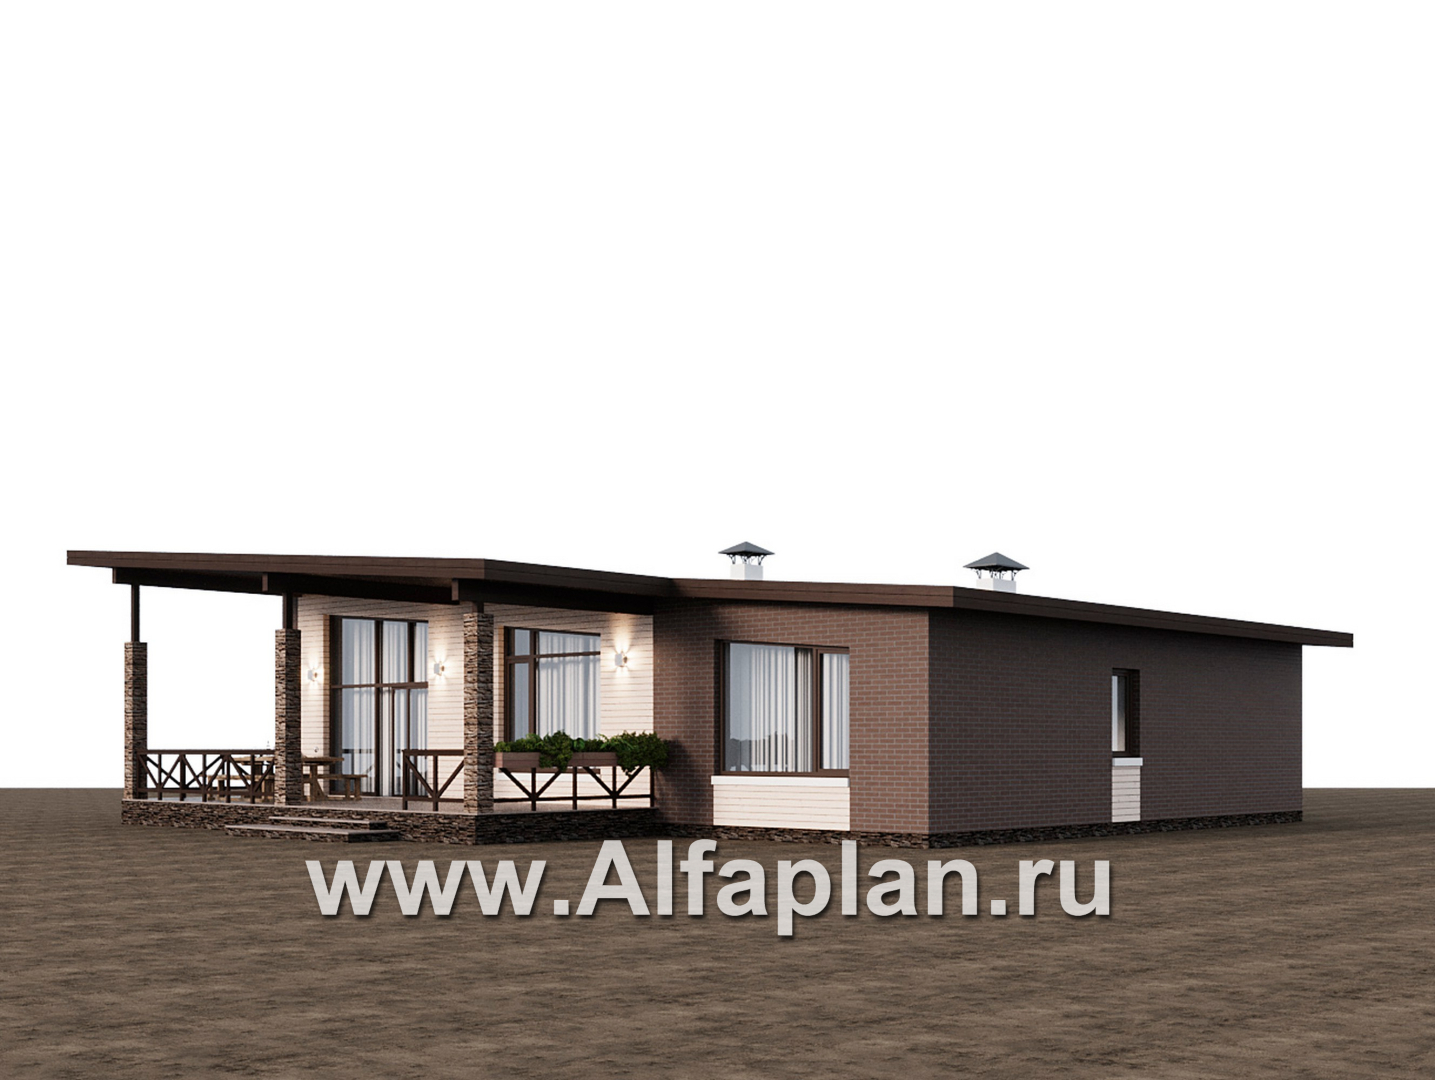 Проекты домов Альфаплан - "Стрелец" -проект газобетонного одноэтажного дома с односкатной крышей - дополнительное изображение №3